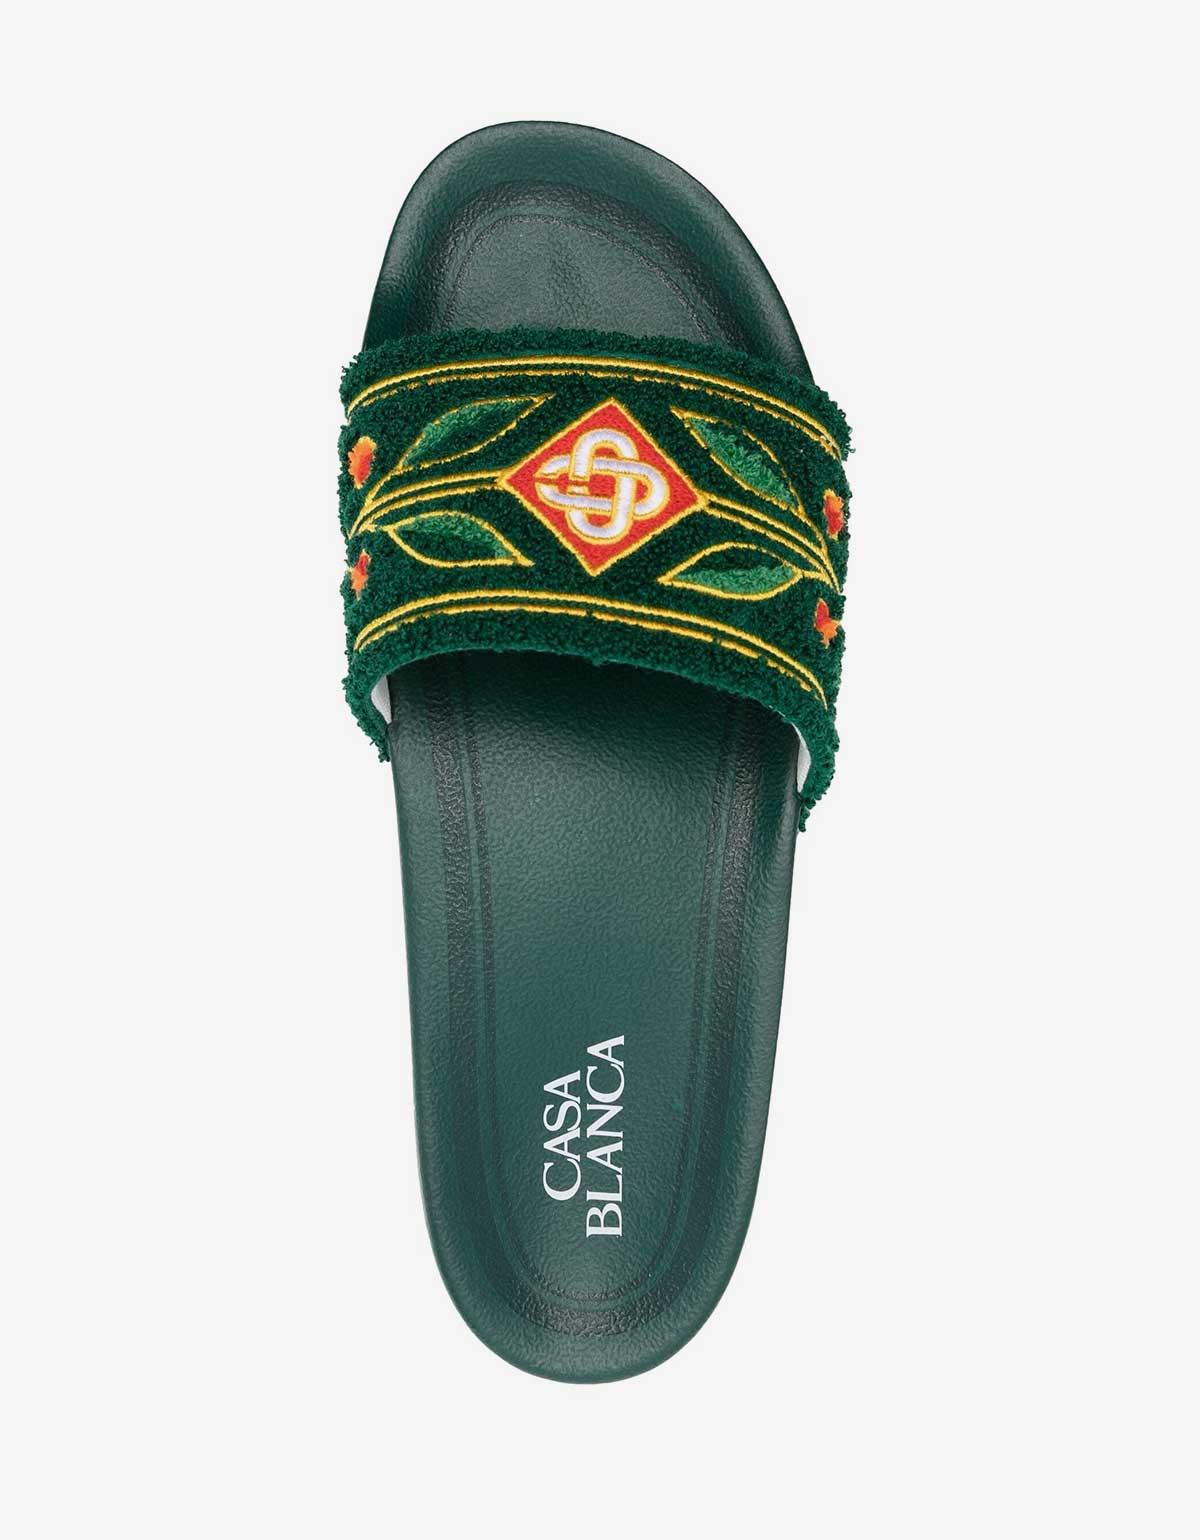 Casablanca Casablanca Green Embroidered Terry Slider Sandals